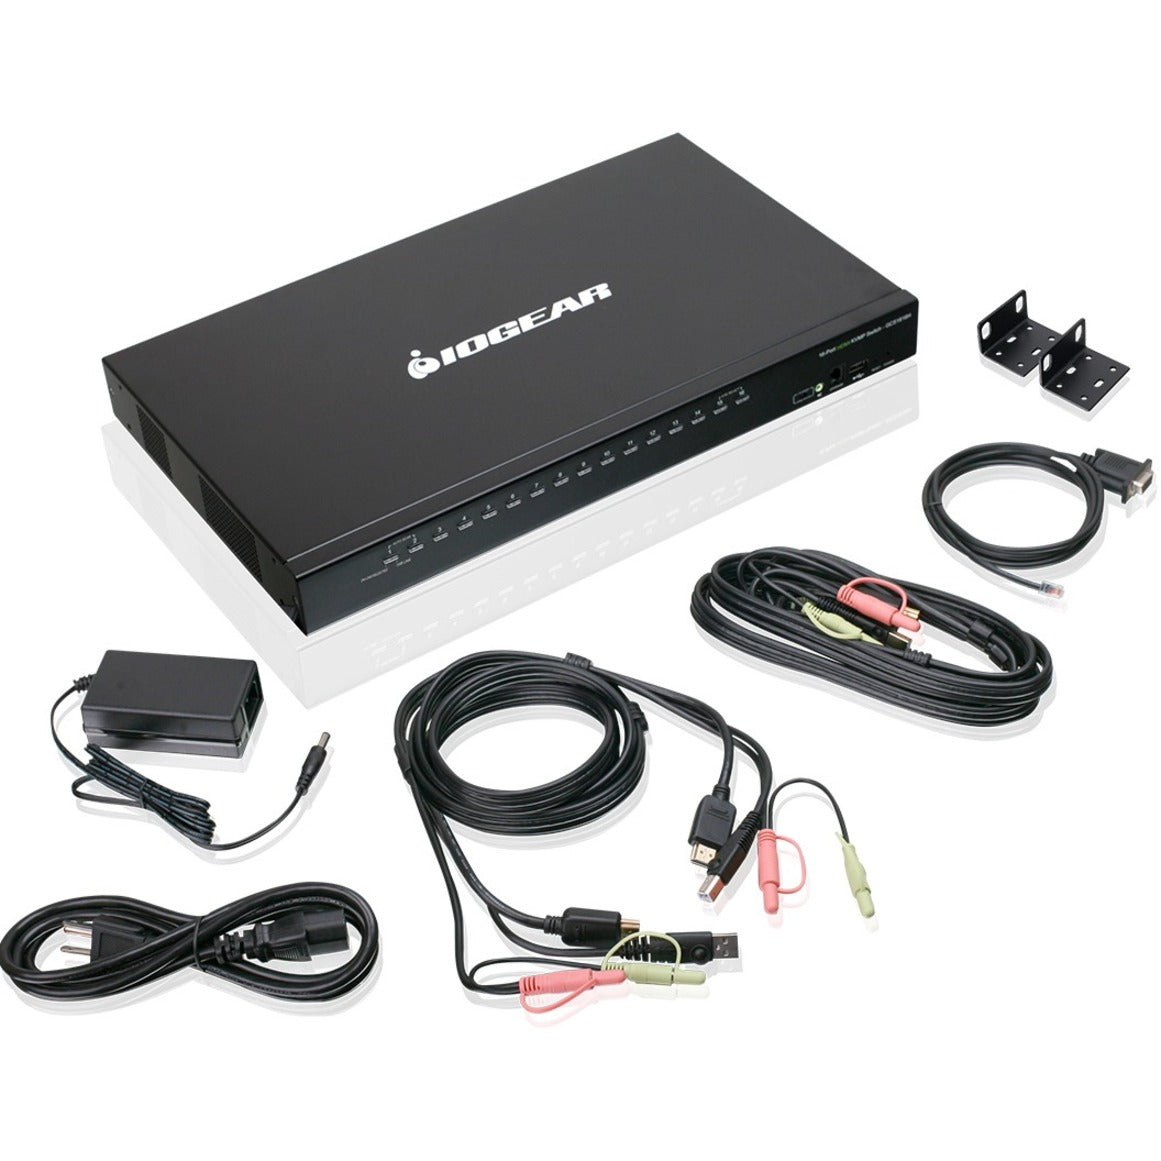 IOGEAR GCS1816H 16-Puerto USB HDMI Conmutador KVM con Audio Cumple con TAA. Marca: IOGEAR. Traducir IOGEAR: IOGEAR.